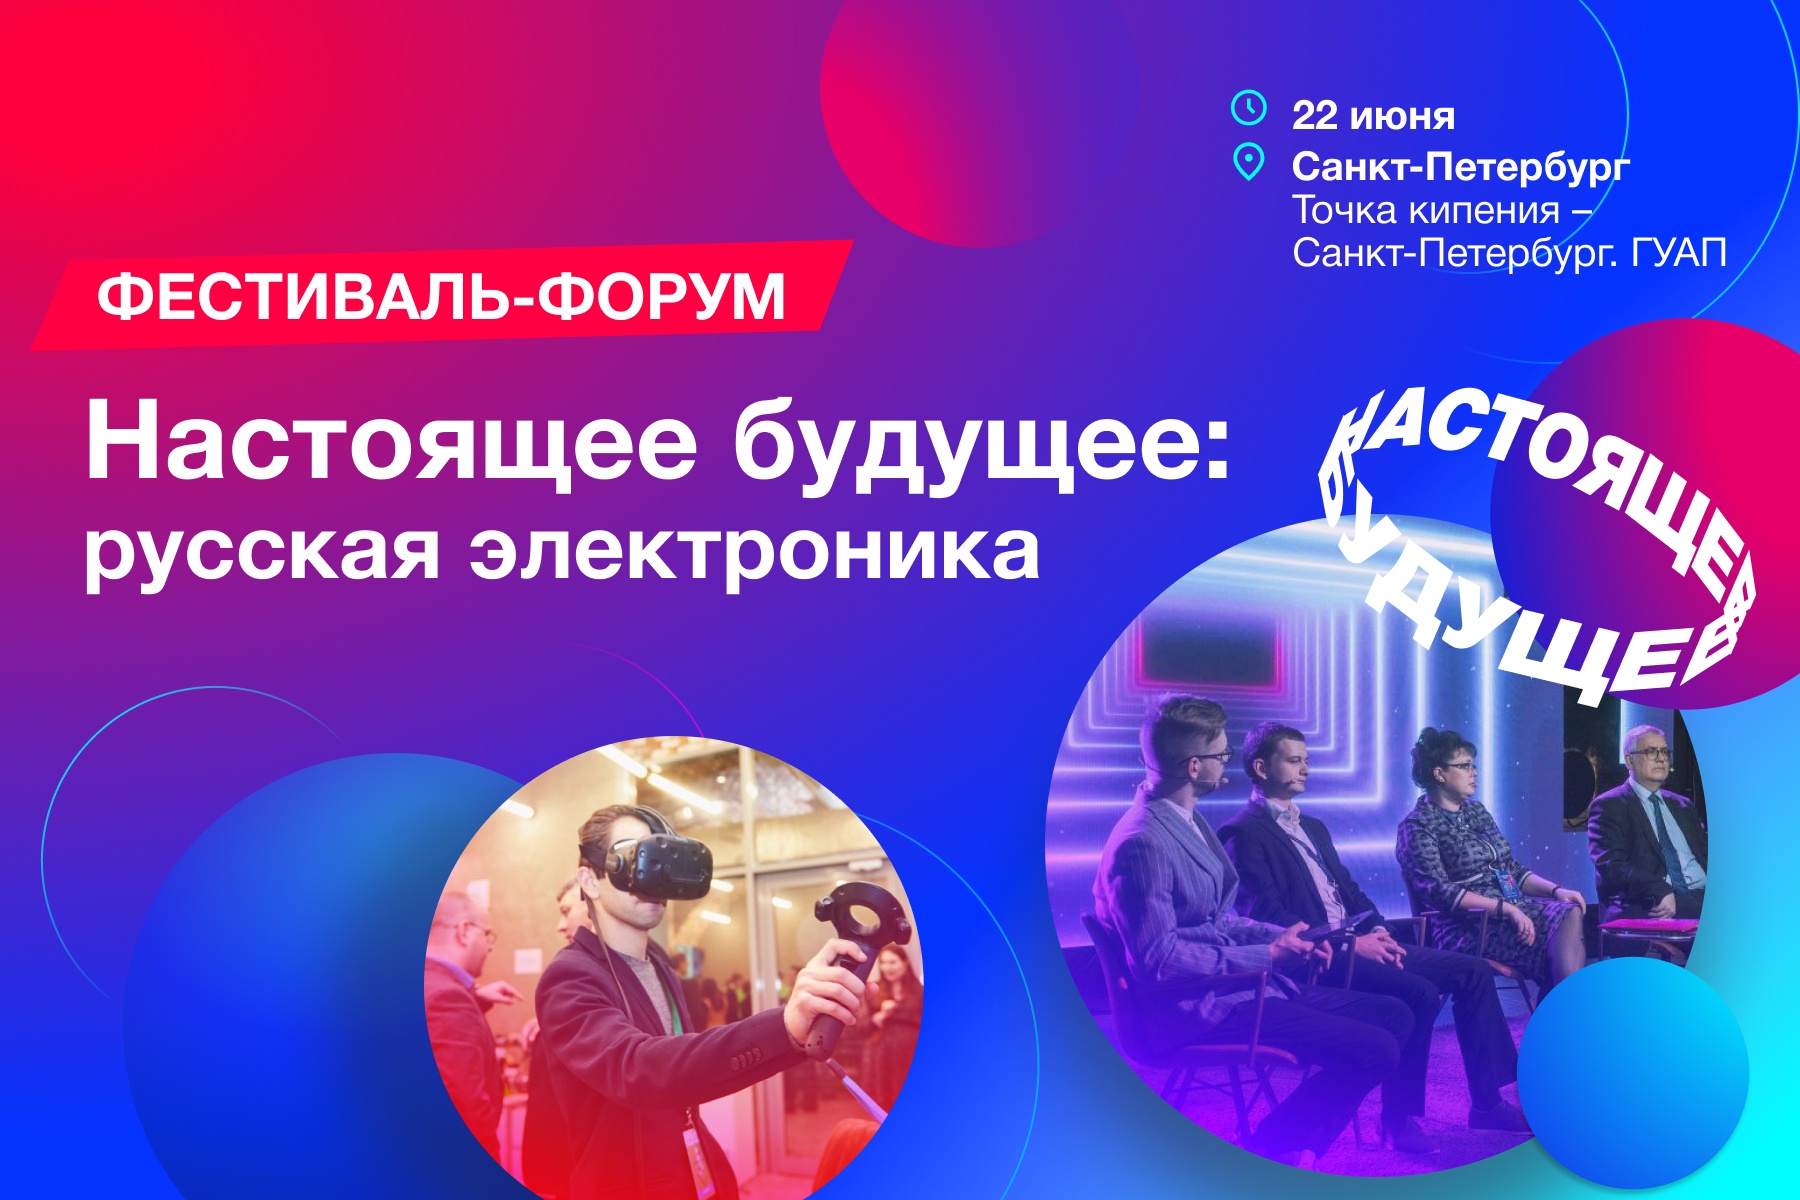 Петербург открывает мероприятия фестиваля-форума «НАСТОЯЩЕЕ БУДУЩЕЕ: русская электроника»